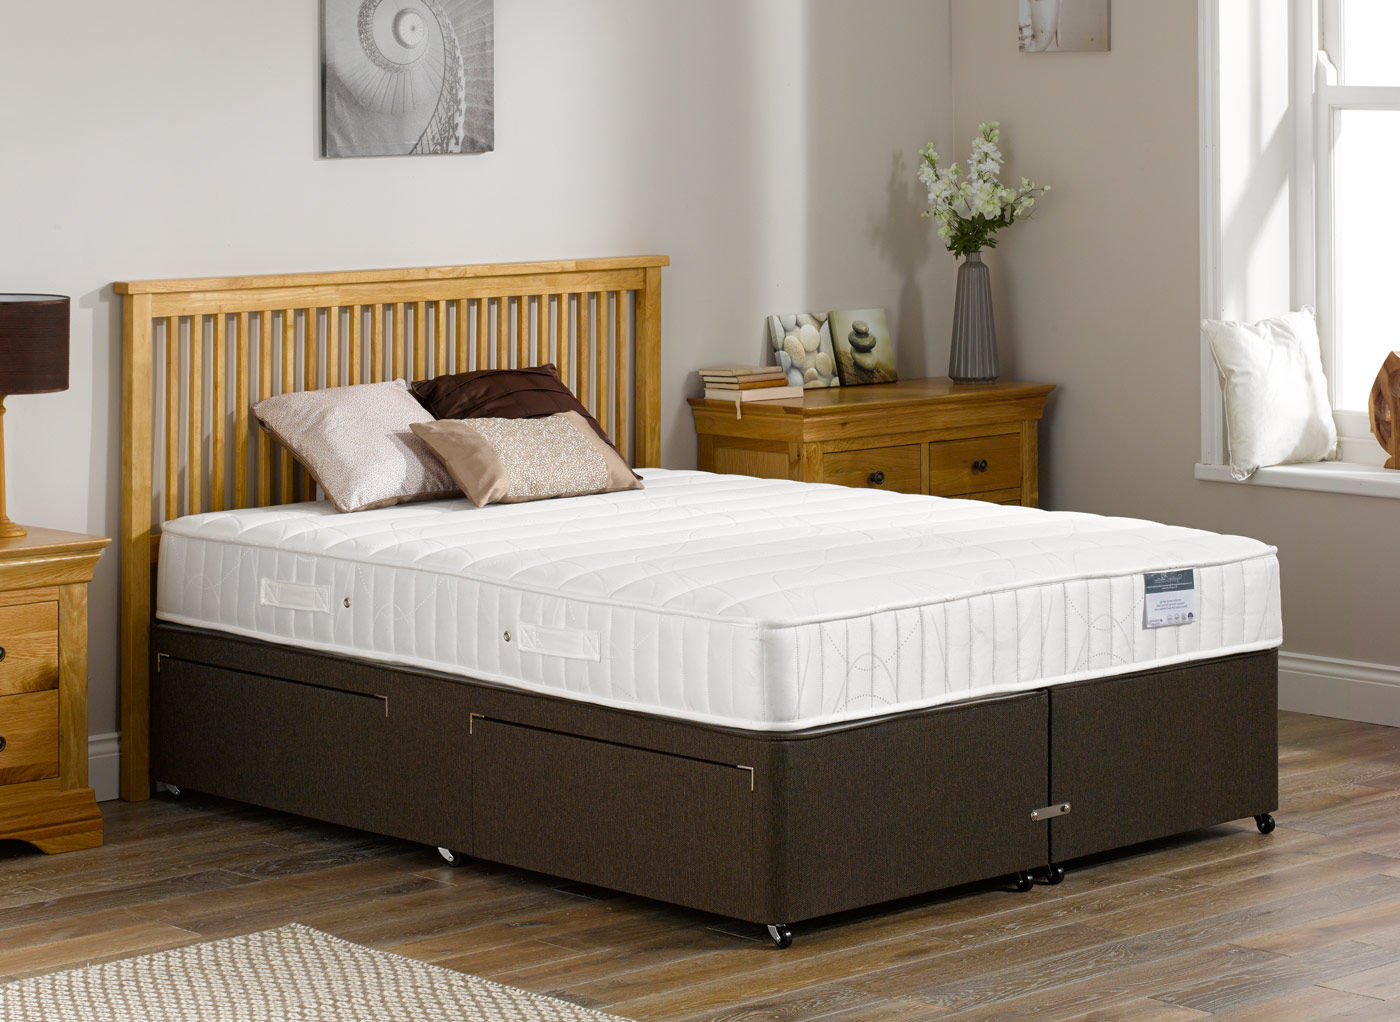 kendall pocket sprung mattress review